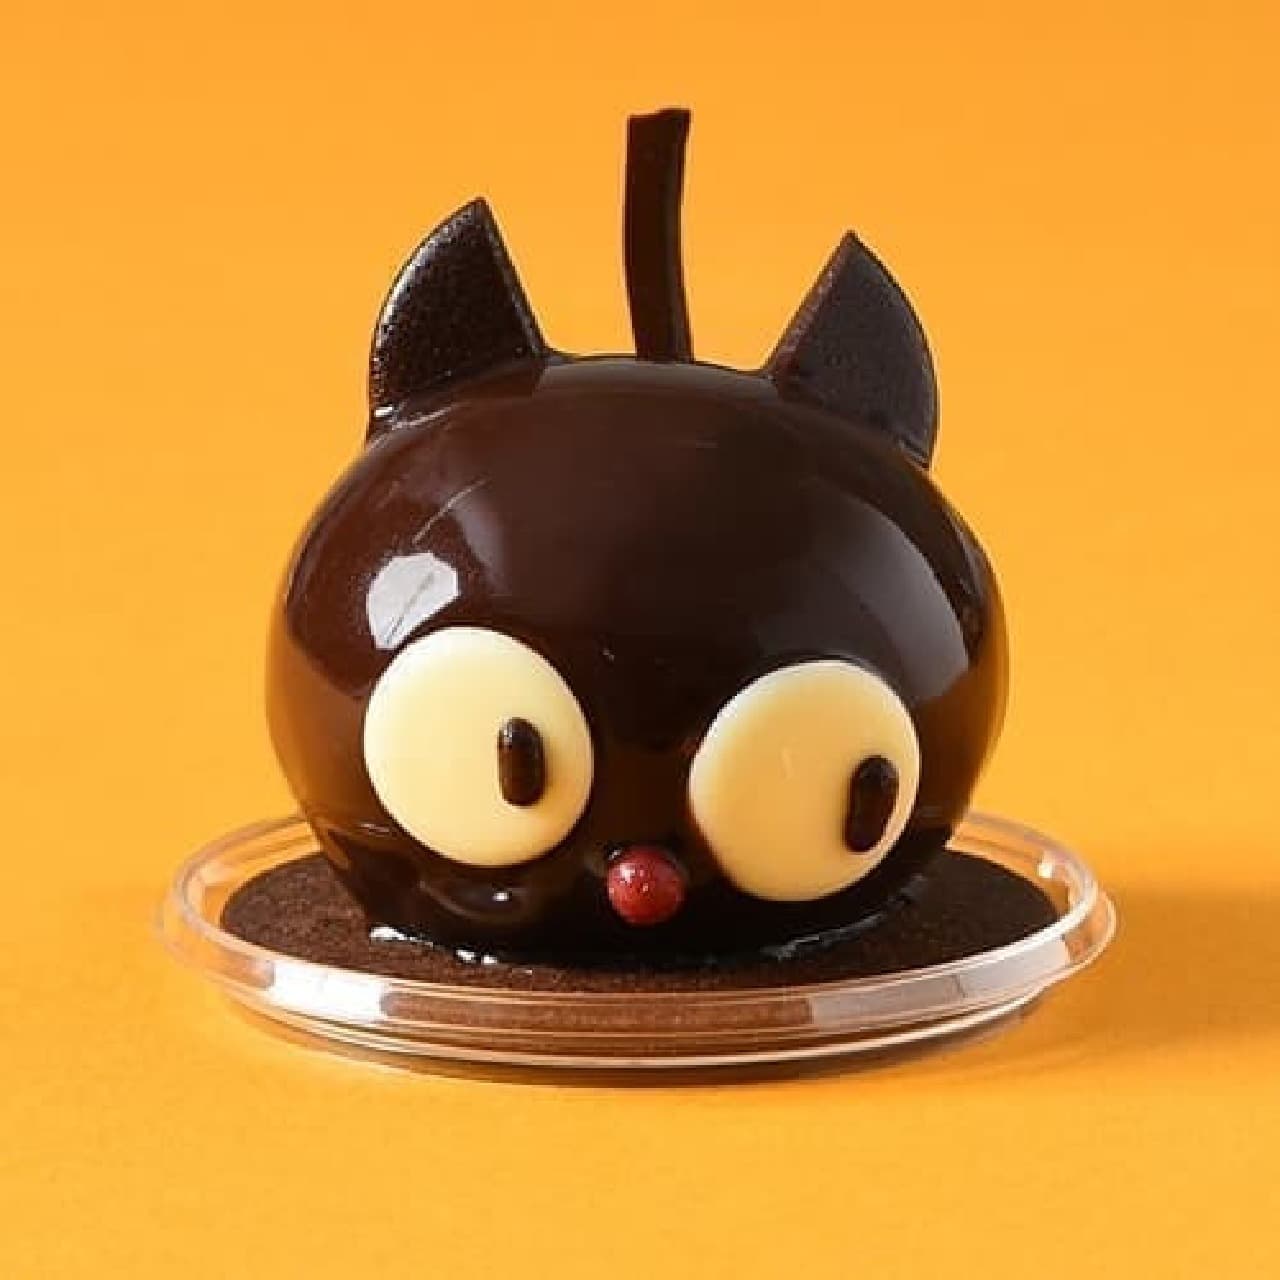 コロンバン「黒猫のケーキ」